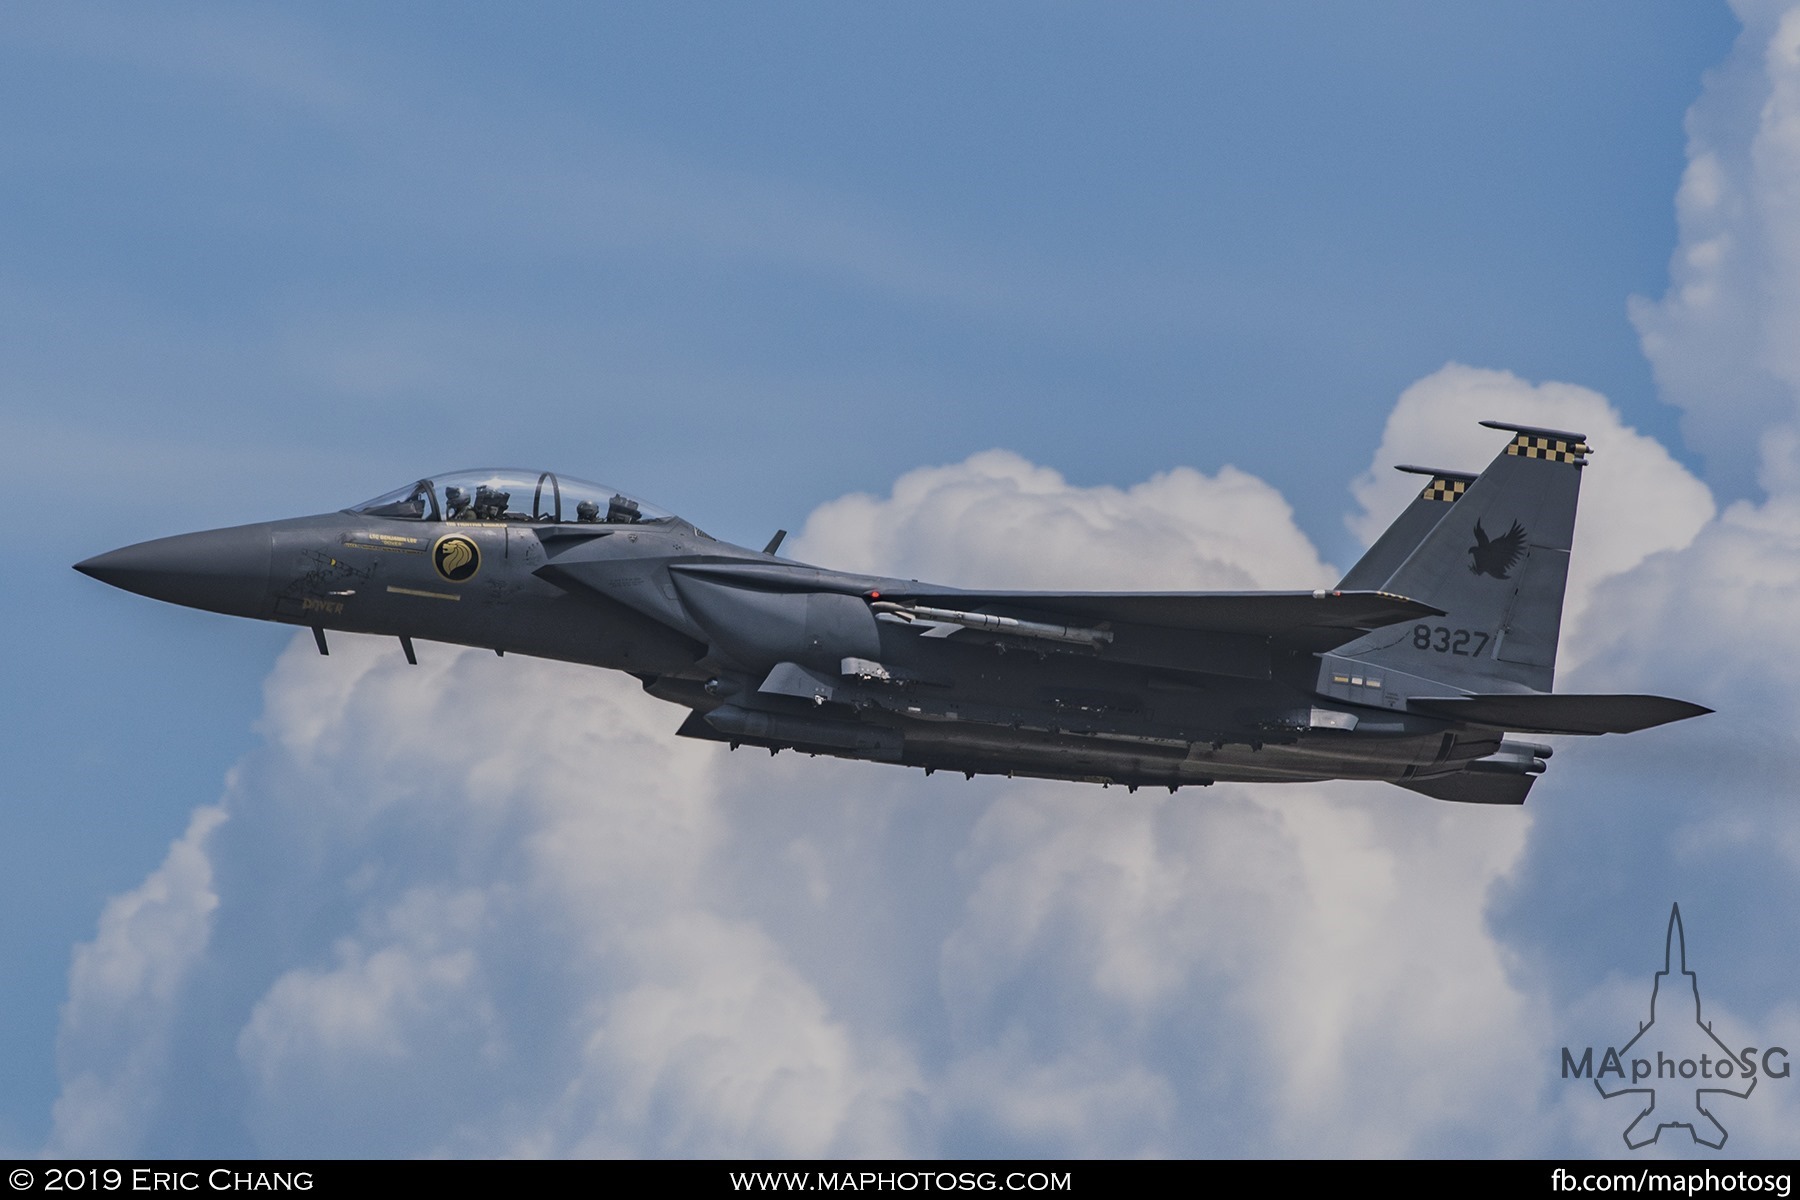 149 SQN F-15SG (8327)